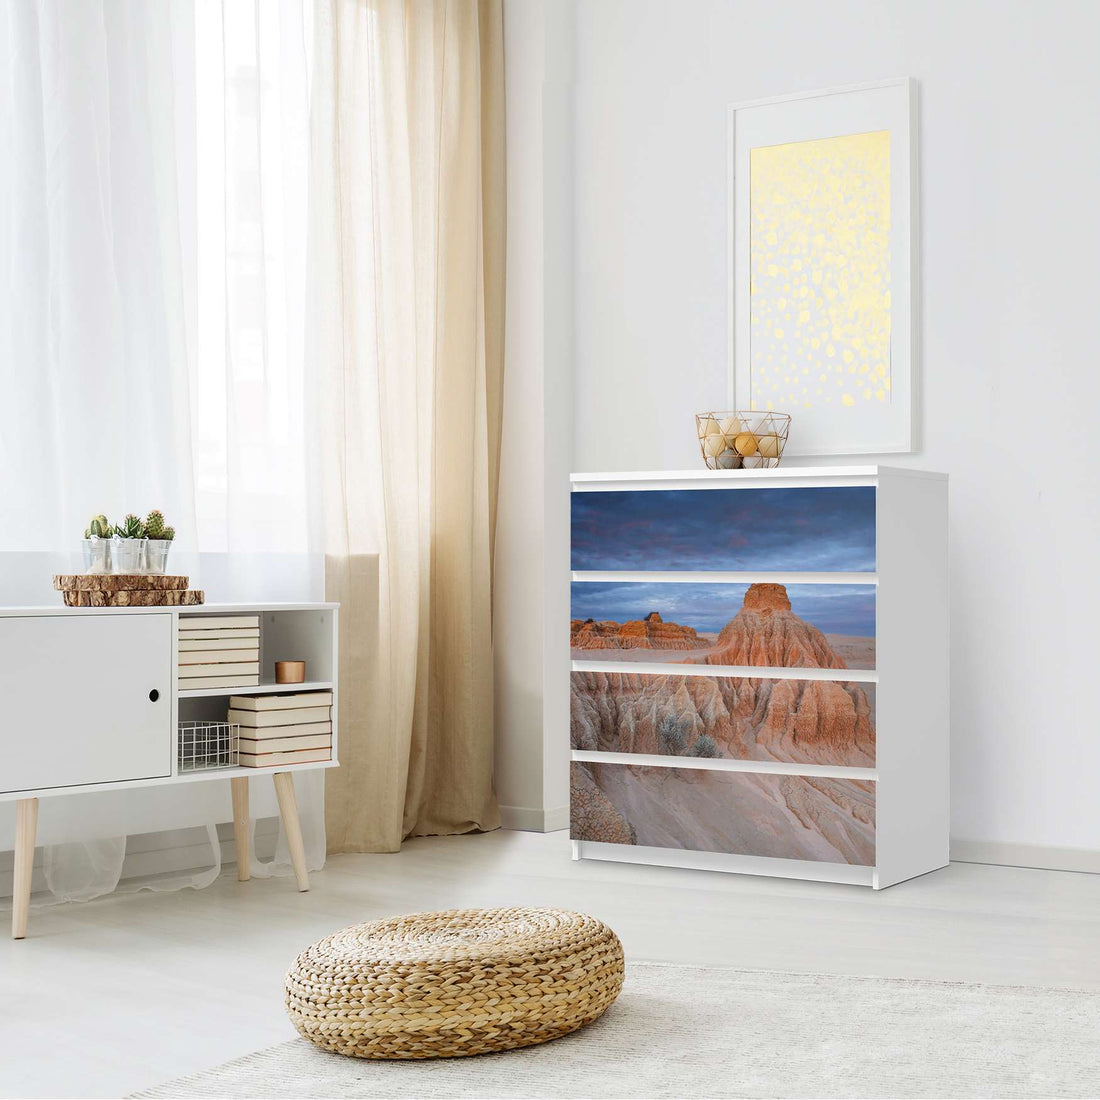 Folie für Möbel Outback Australia - IKEA Malm Kommode 4 Schubladen - Schlafzimmer